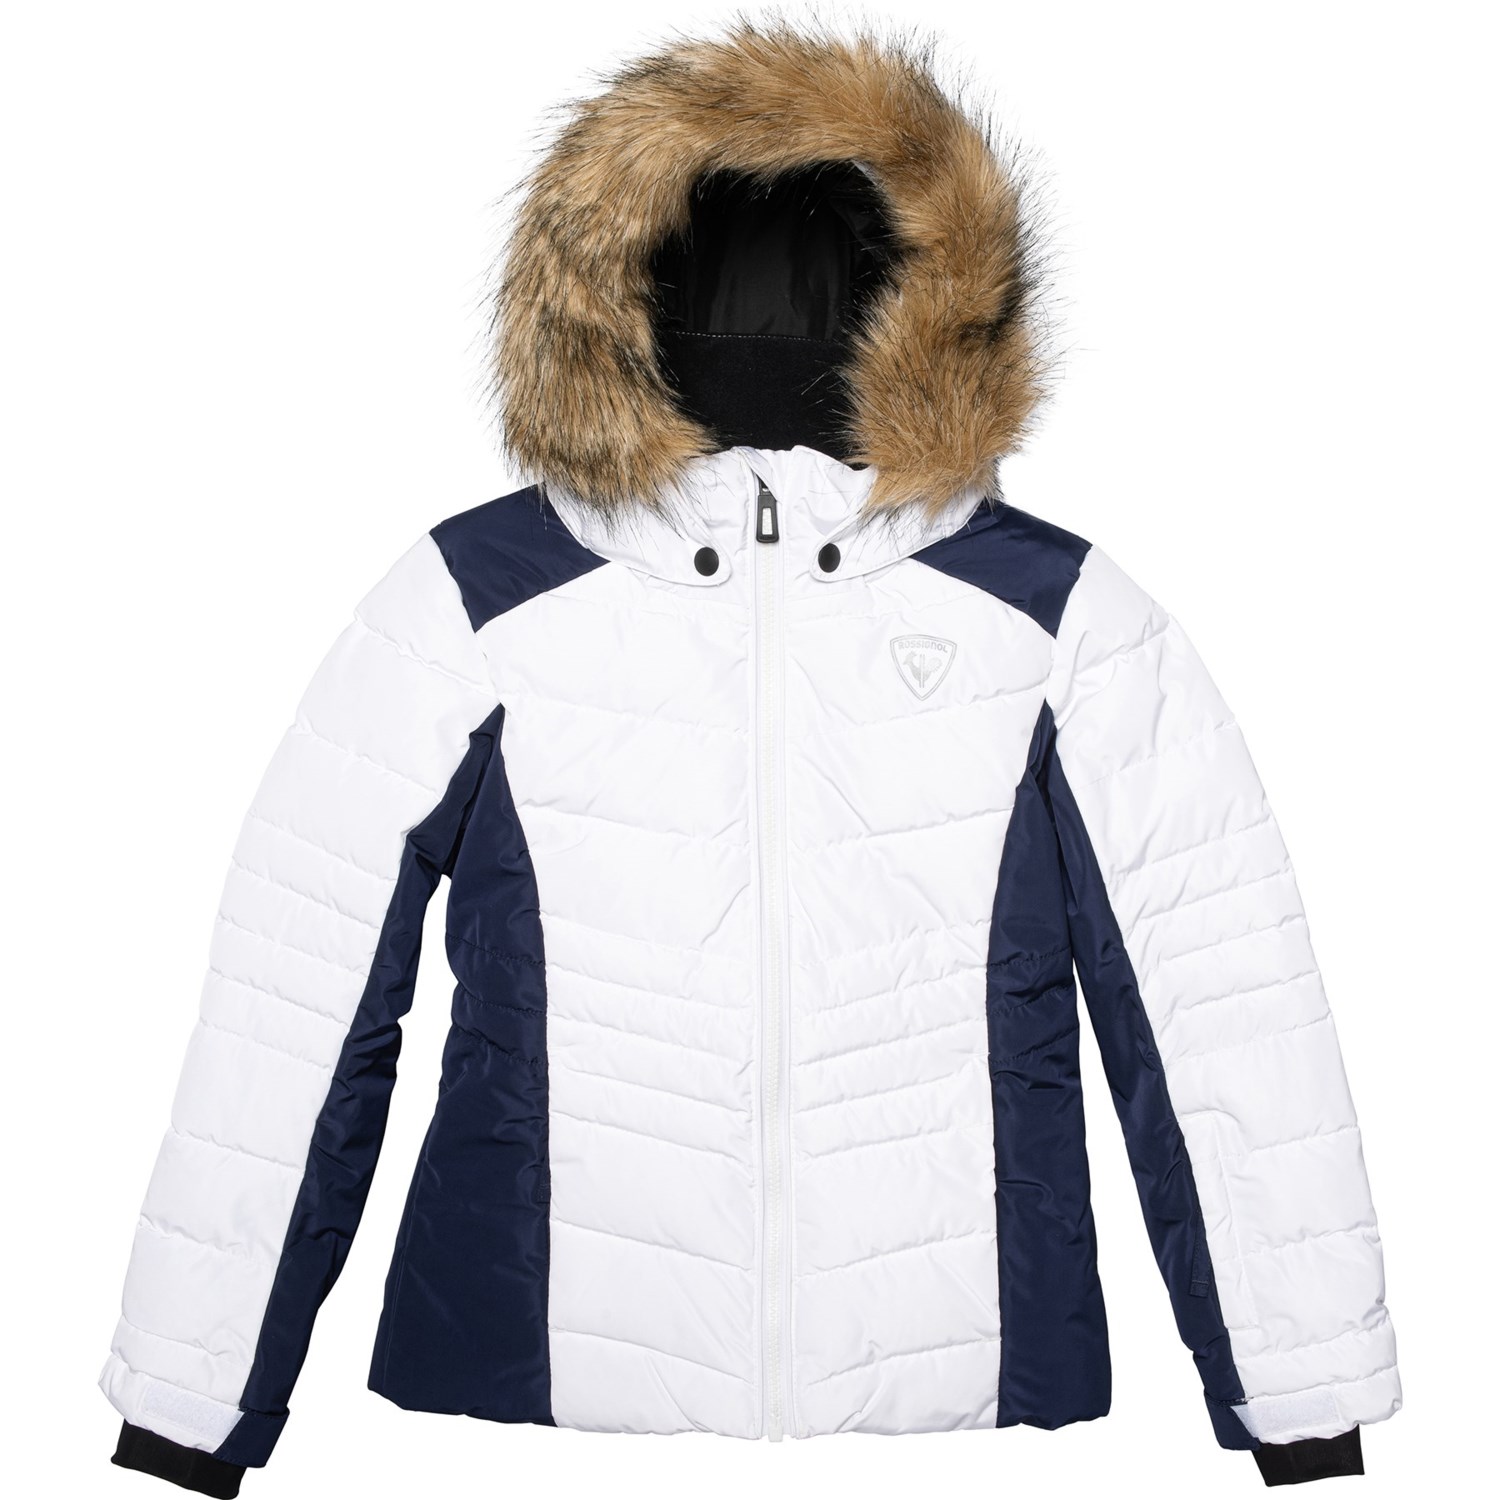 rossignol white ski jacket